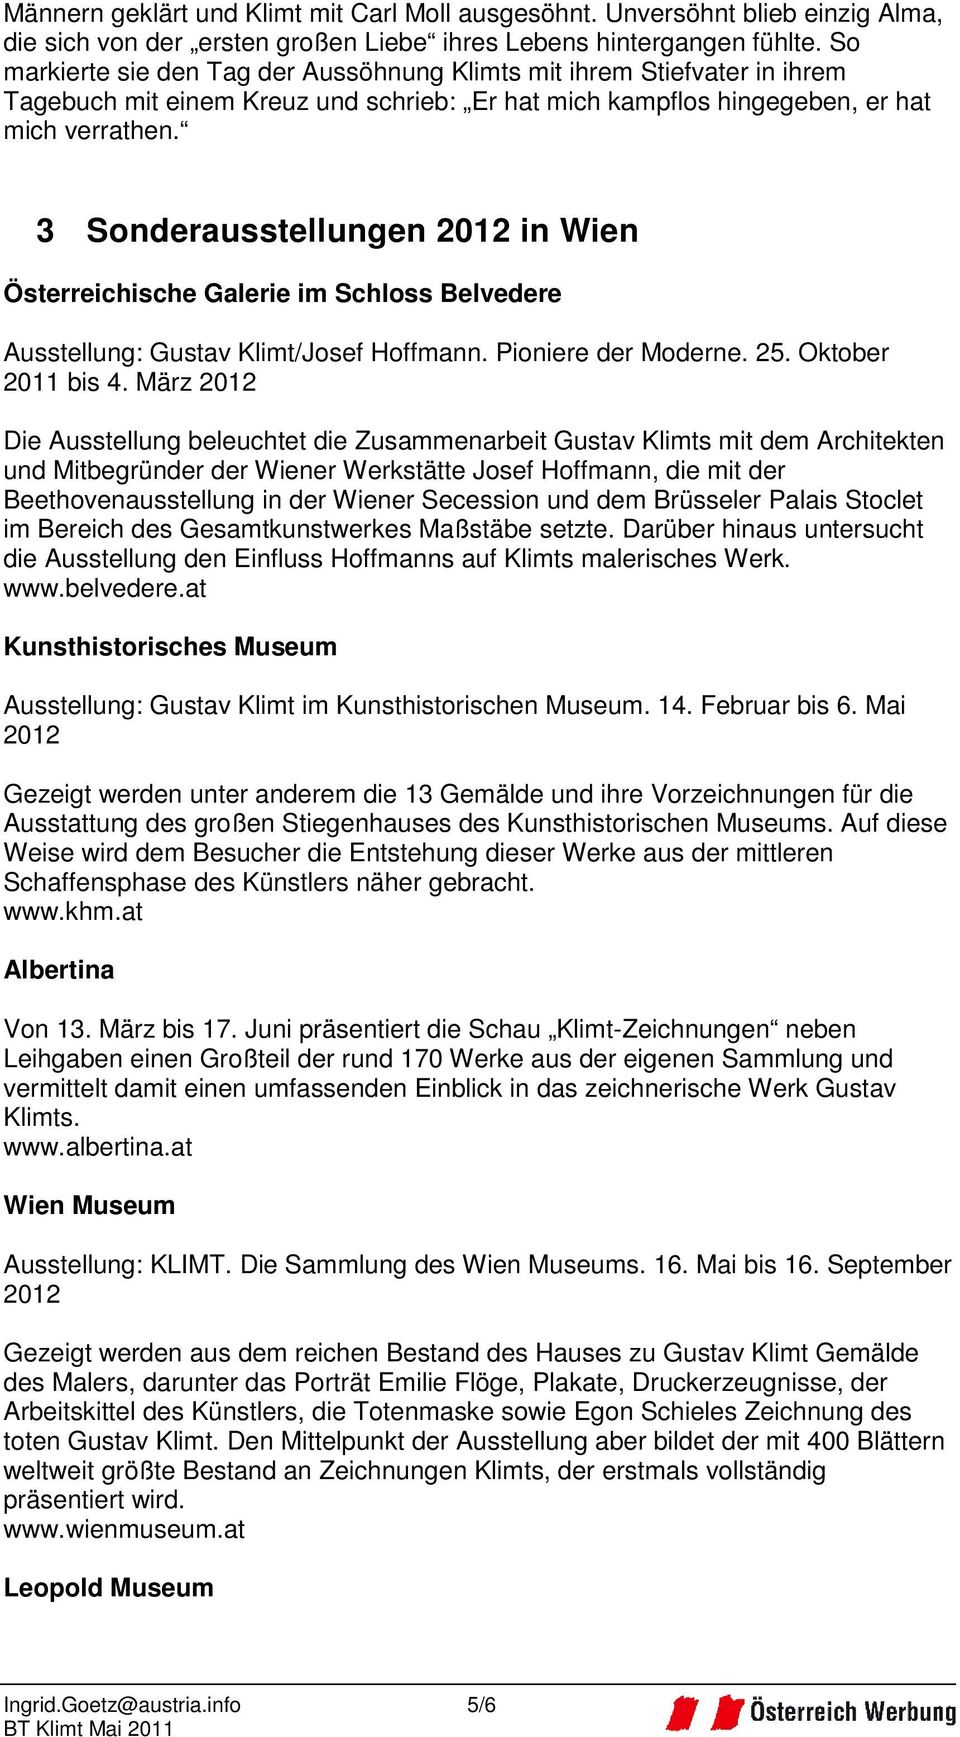 3 Sonderausstellungen 2012 in Wien Österreichische Galerie im Schloss Belvedere Ausstellung: Gustav Klimt/Josef Hoffmann. Pioniere der Moderne. 25. Oktober 2011 bis 4.